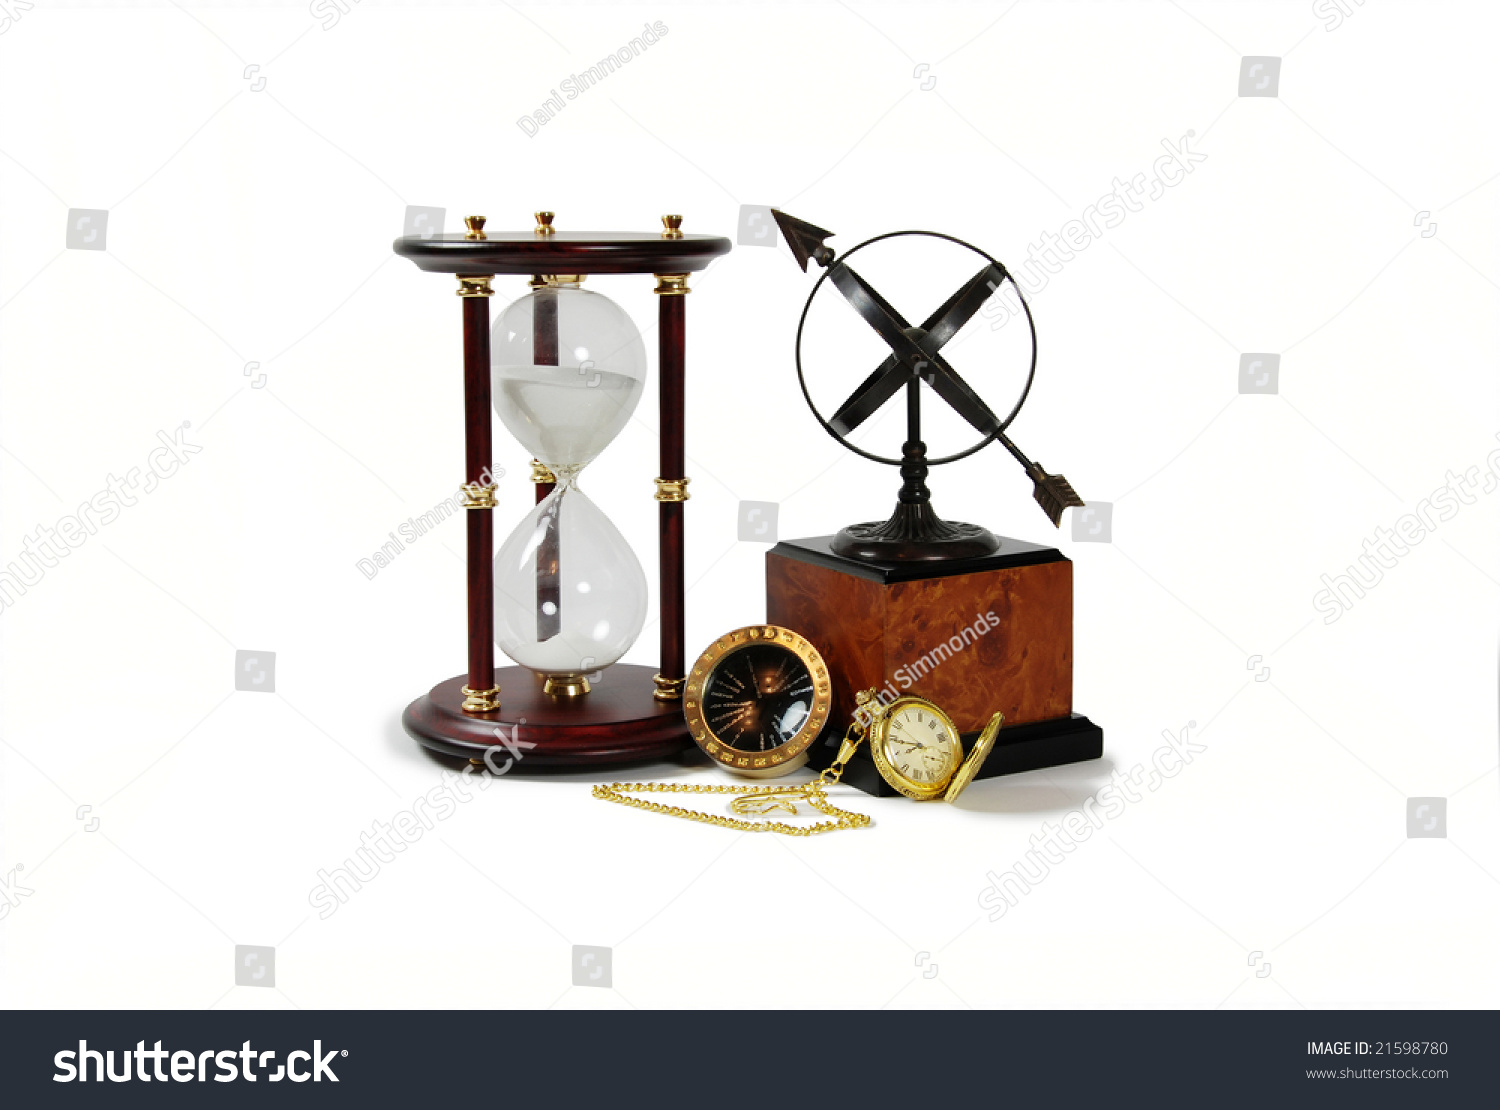 金怀表,古色古香的时区旅行者使用的转换器,日